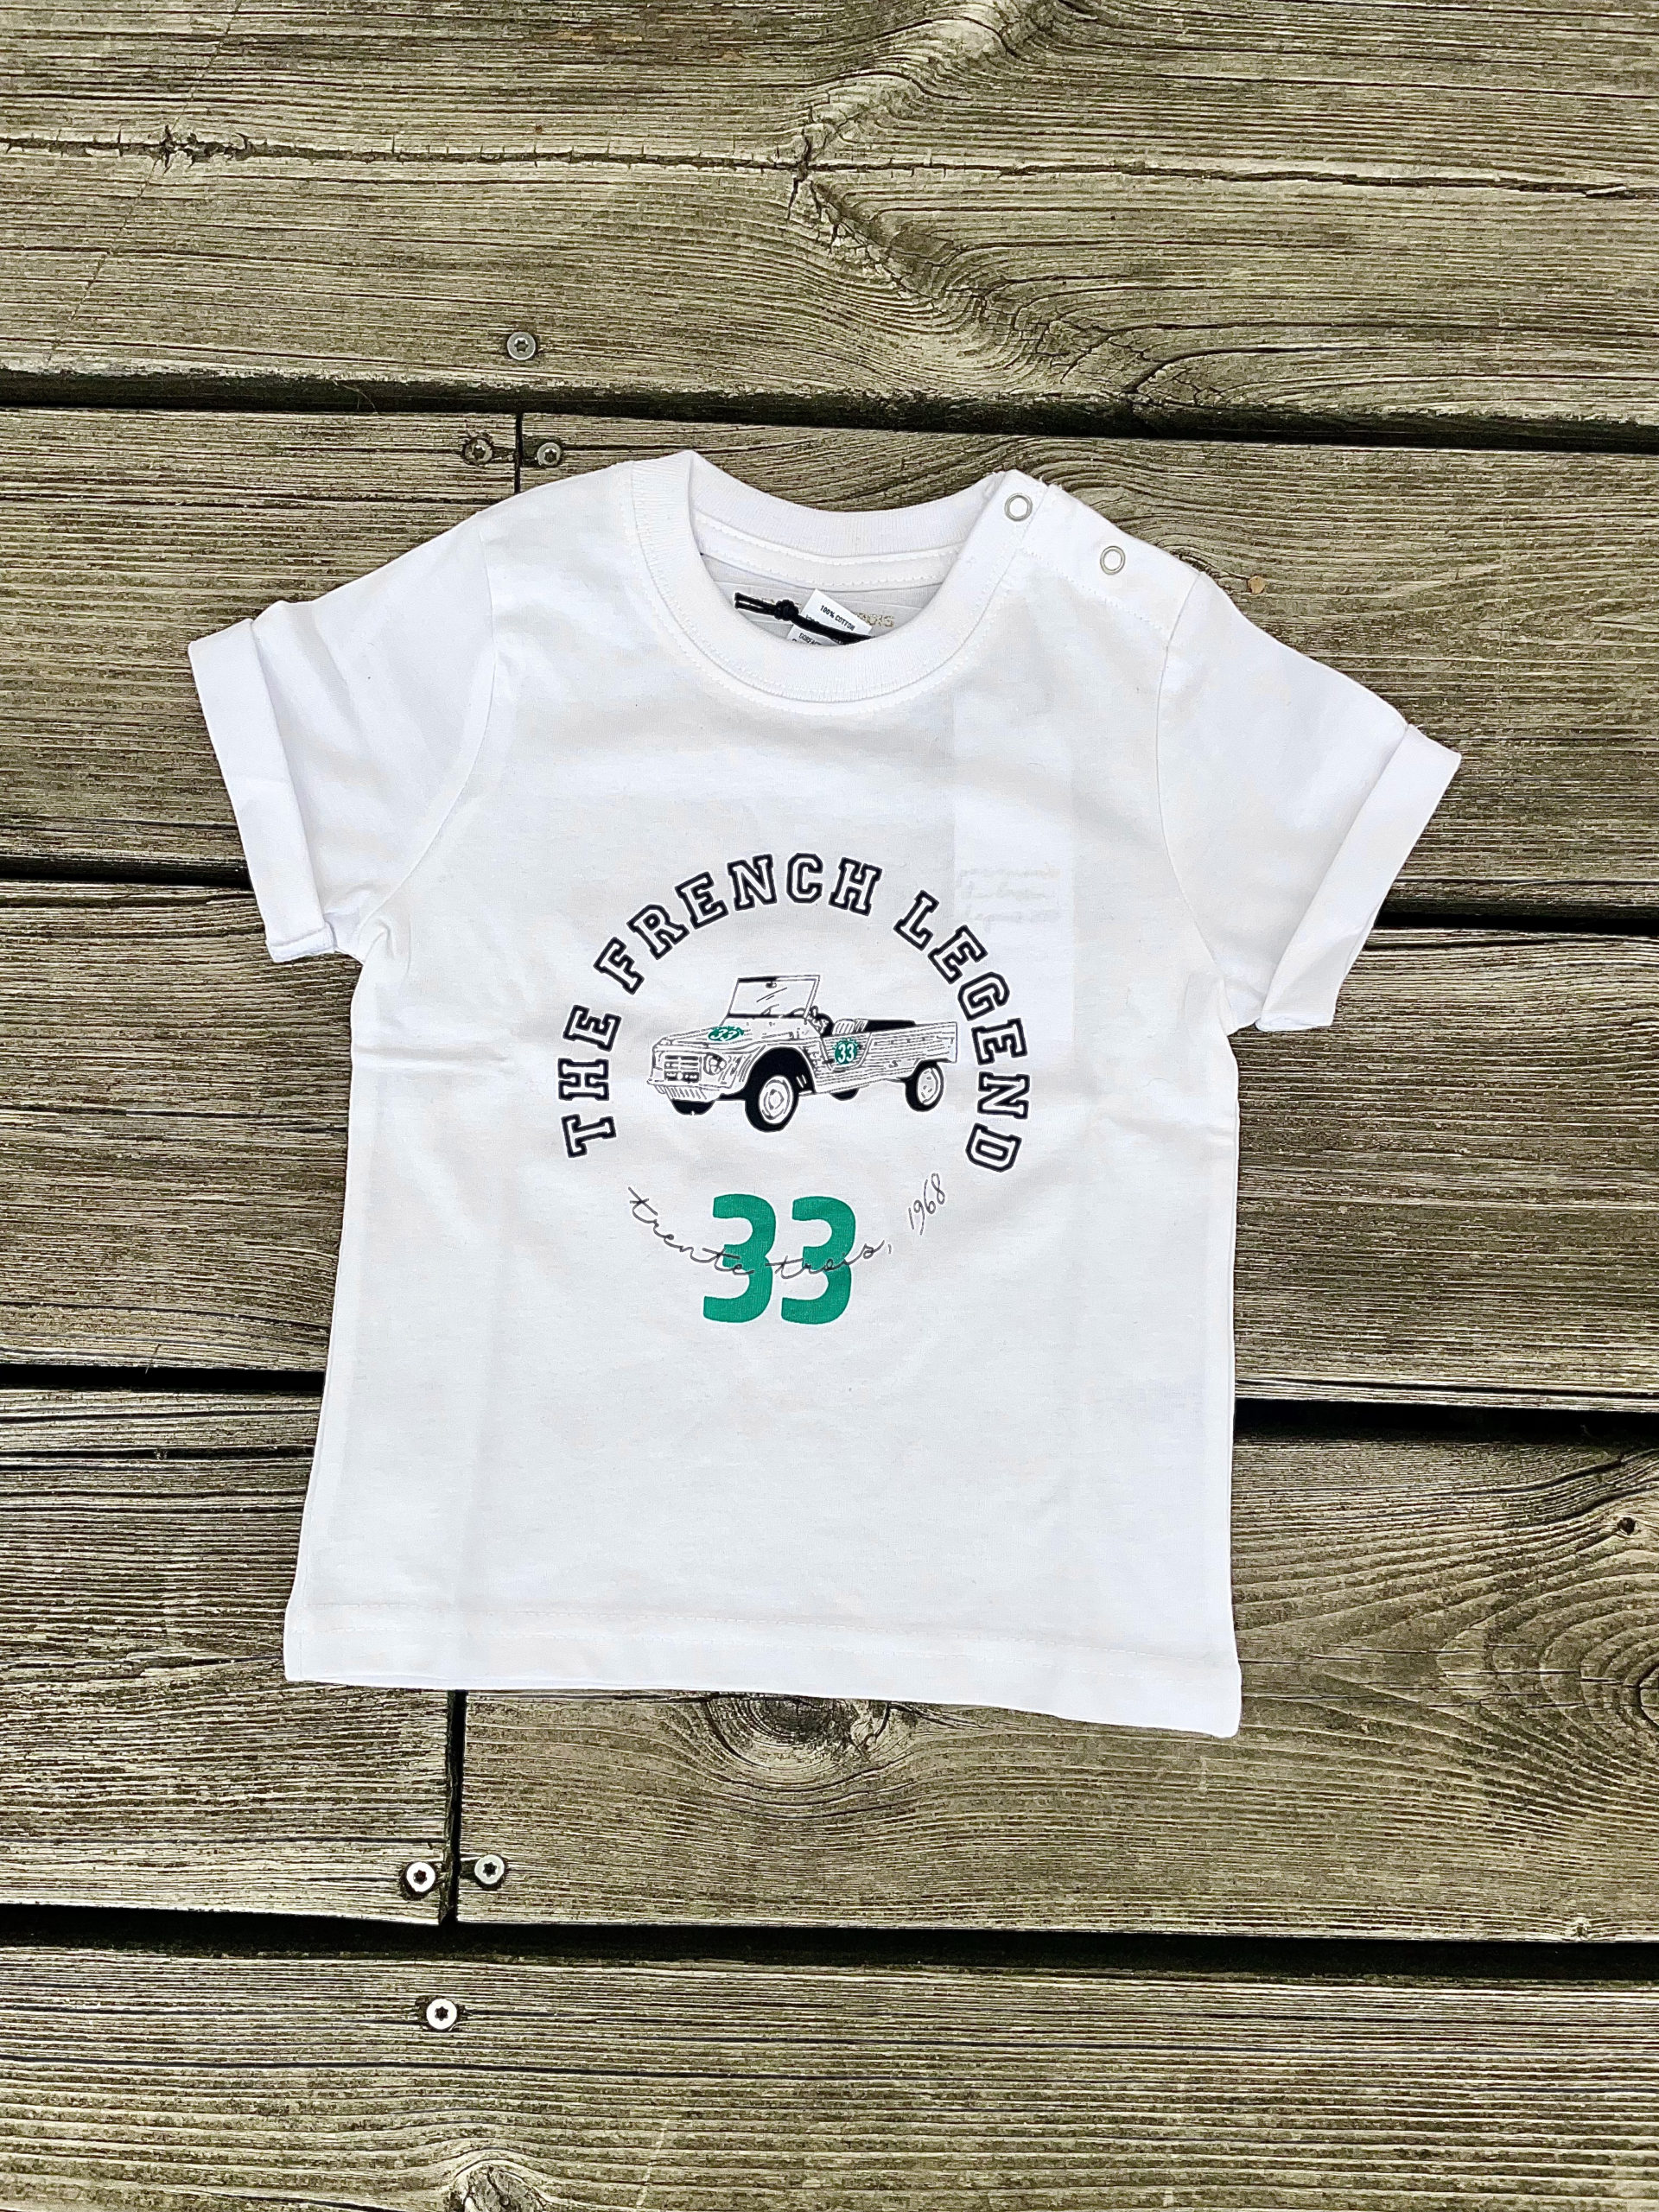 Un tee-shirt blanc pour bébé, estampillé "The French Legend" de la marque régionale 33.